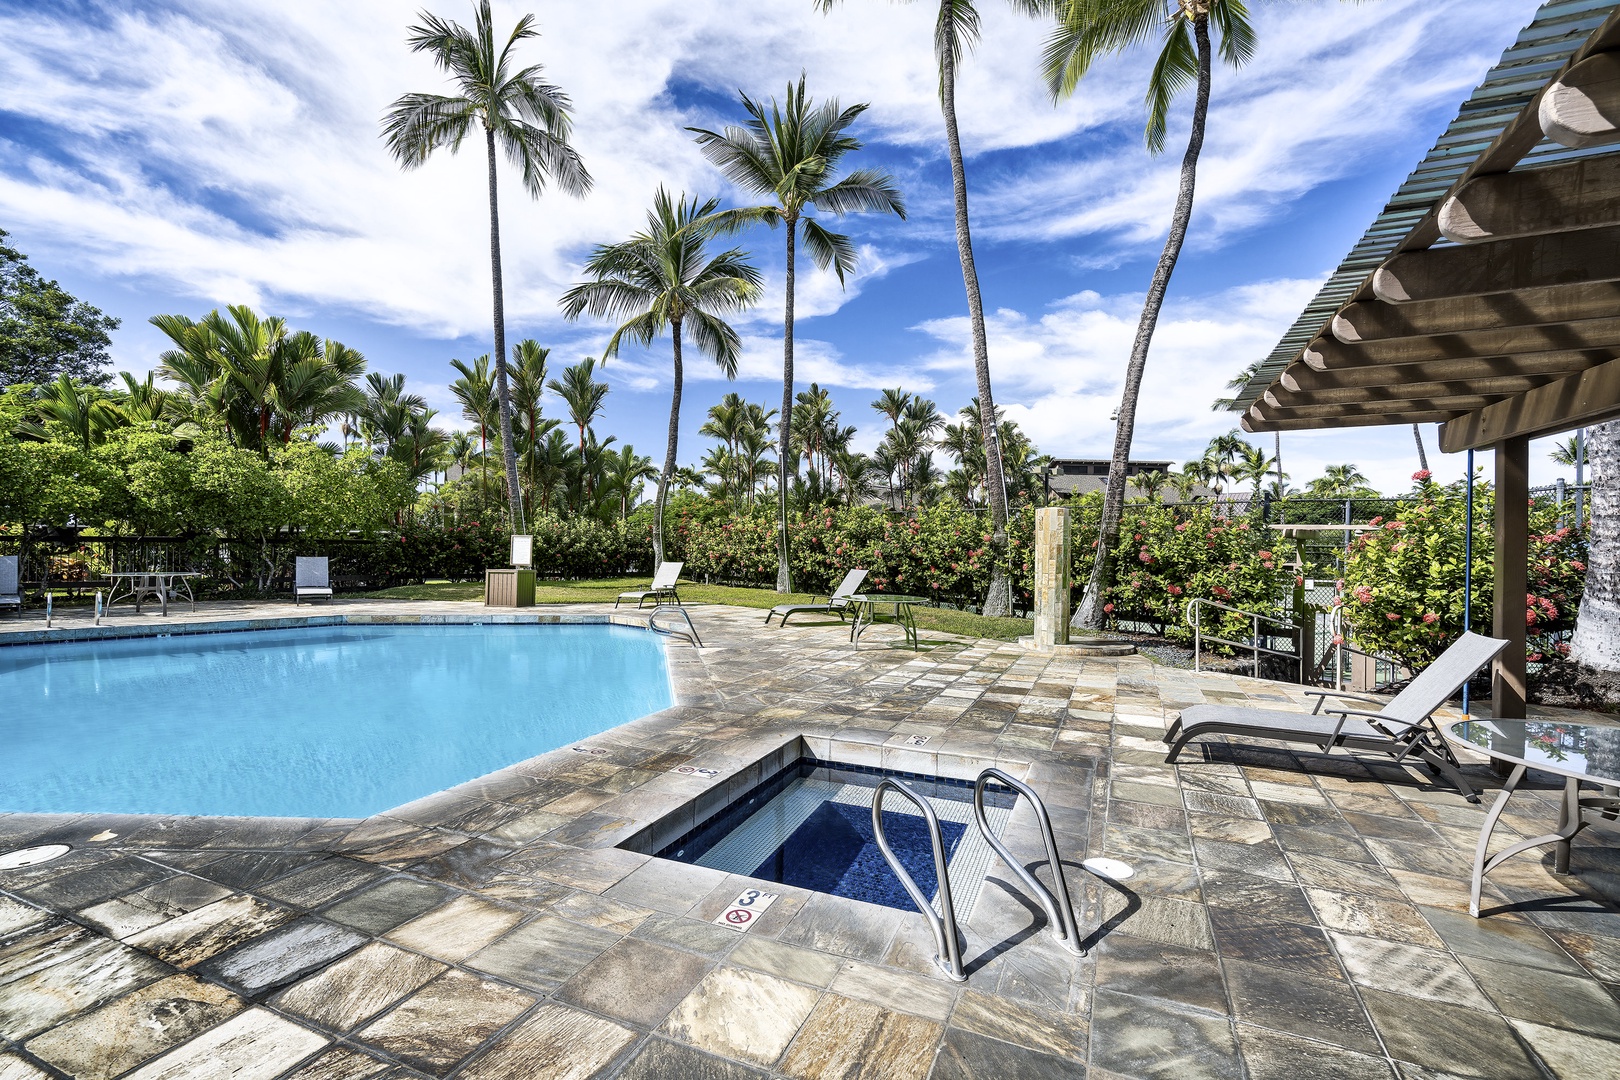 Kailua Kona Vacation Rentals, Kanaloa at Kona 3304 - Hot tub adjacent to the pool